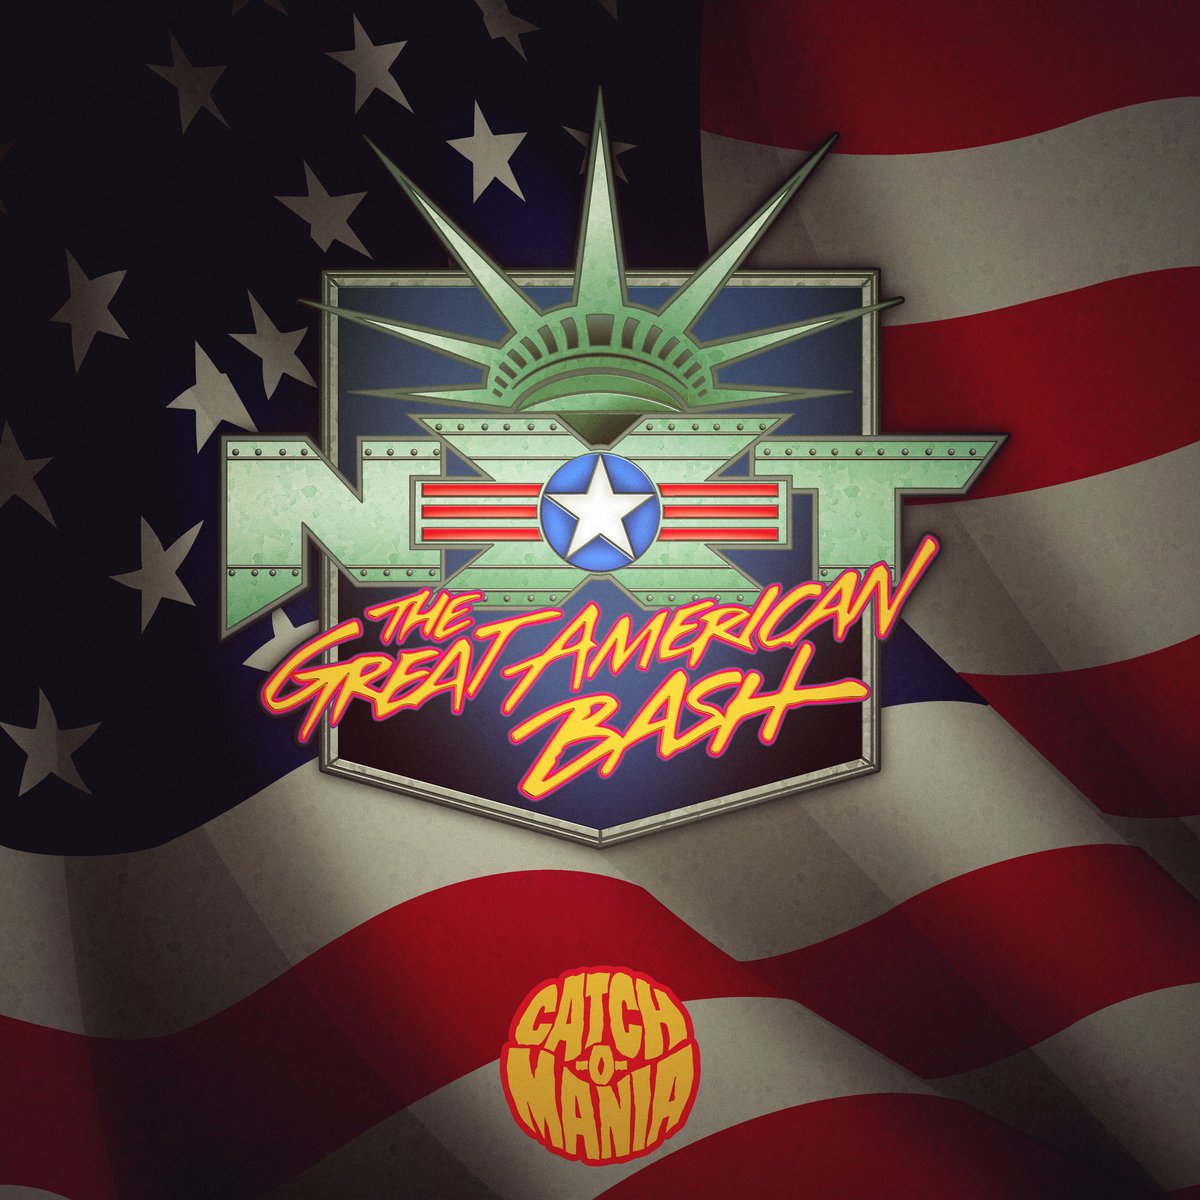 Bashing, USA 🇺🇸 #WWENXT #GreatAmericanBash @WWENXT #concept